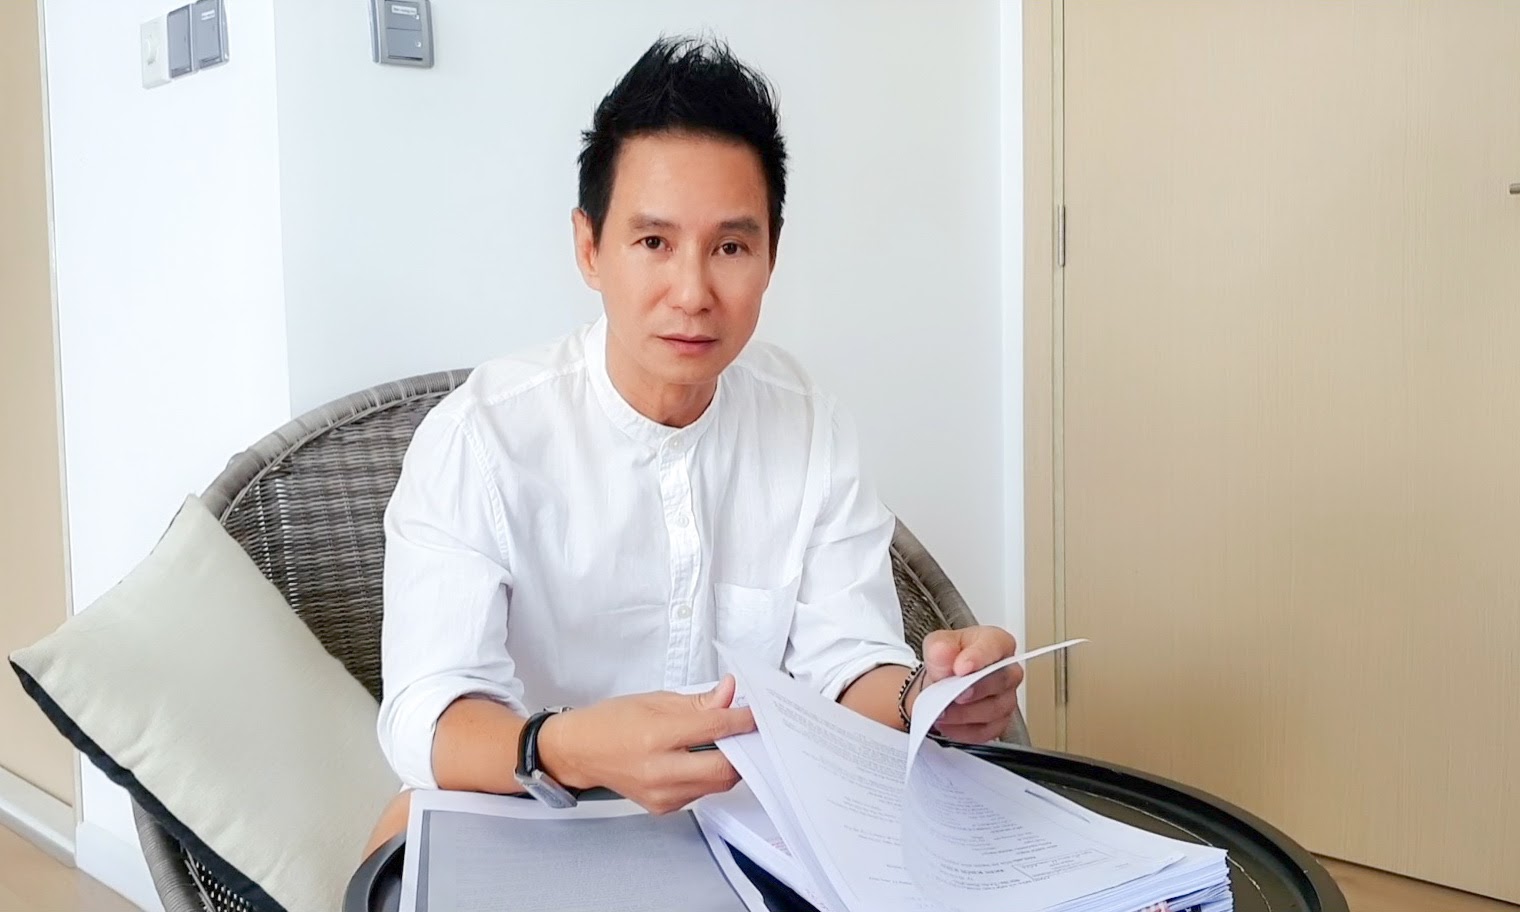 Full profile khủng của luật sư Phan Vũ Tuấn - người đại diện pháp lý cho vợ chồng Công Vinh - Thuỷ Tiên: Từng tham gia kiện Lý Hải - Hình 8